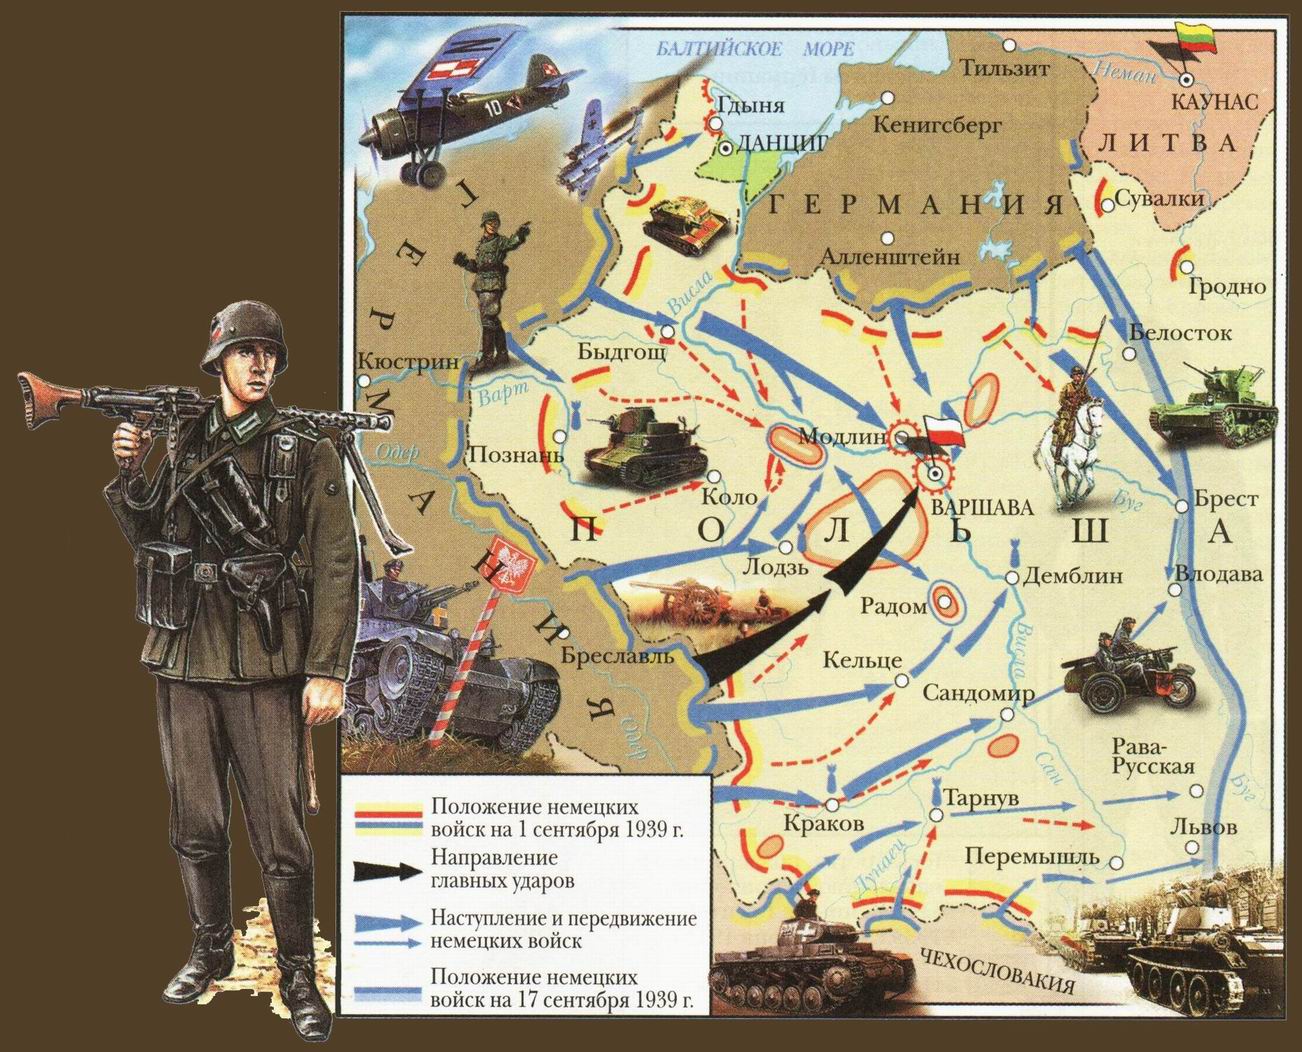 Рассказ захват. Нападение Германии на Польшу 1 сентября 1939 начало 2 мировой войны. План по захвату Польши Германией. План нападения на Польшу 1939.